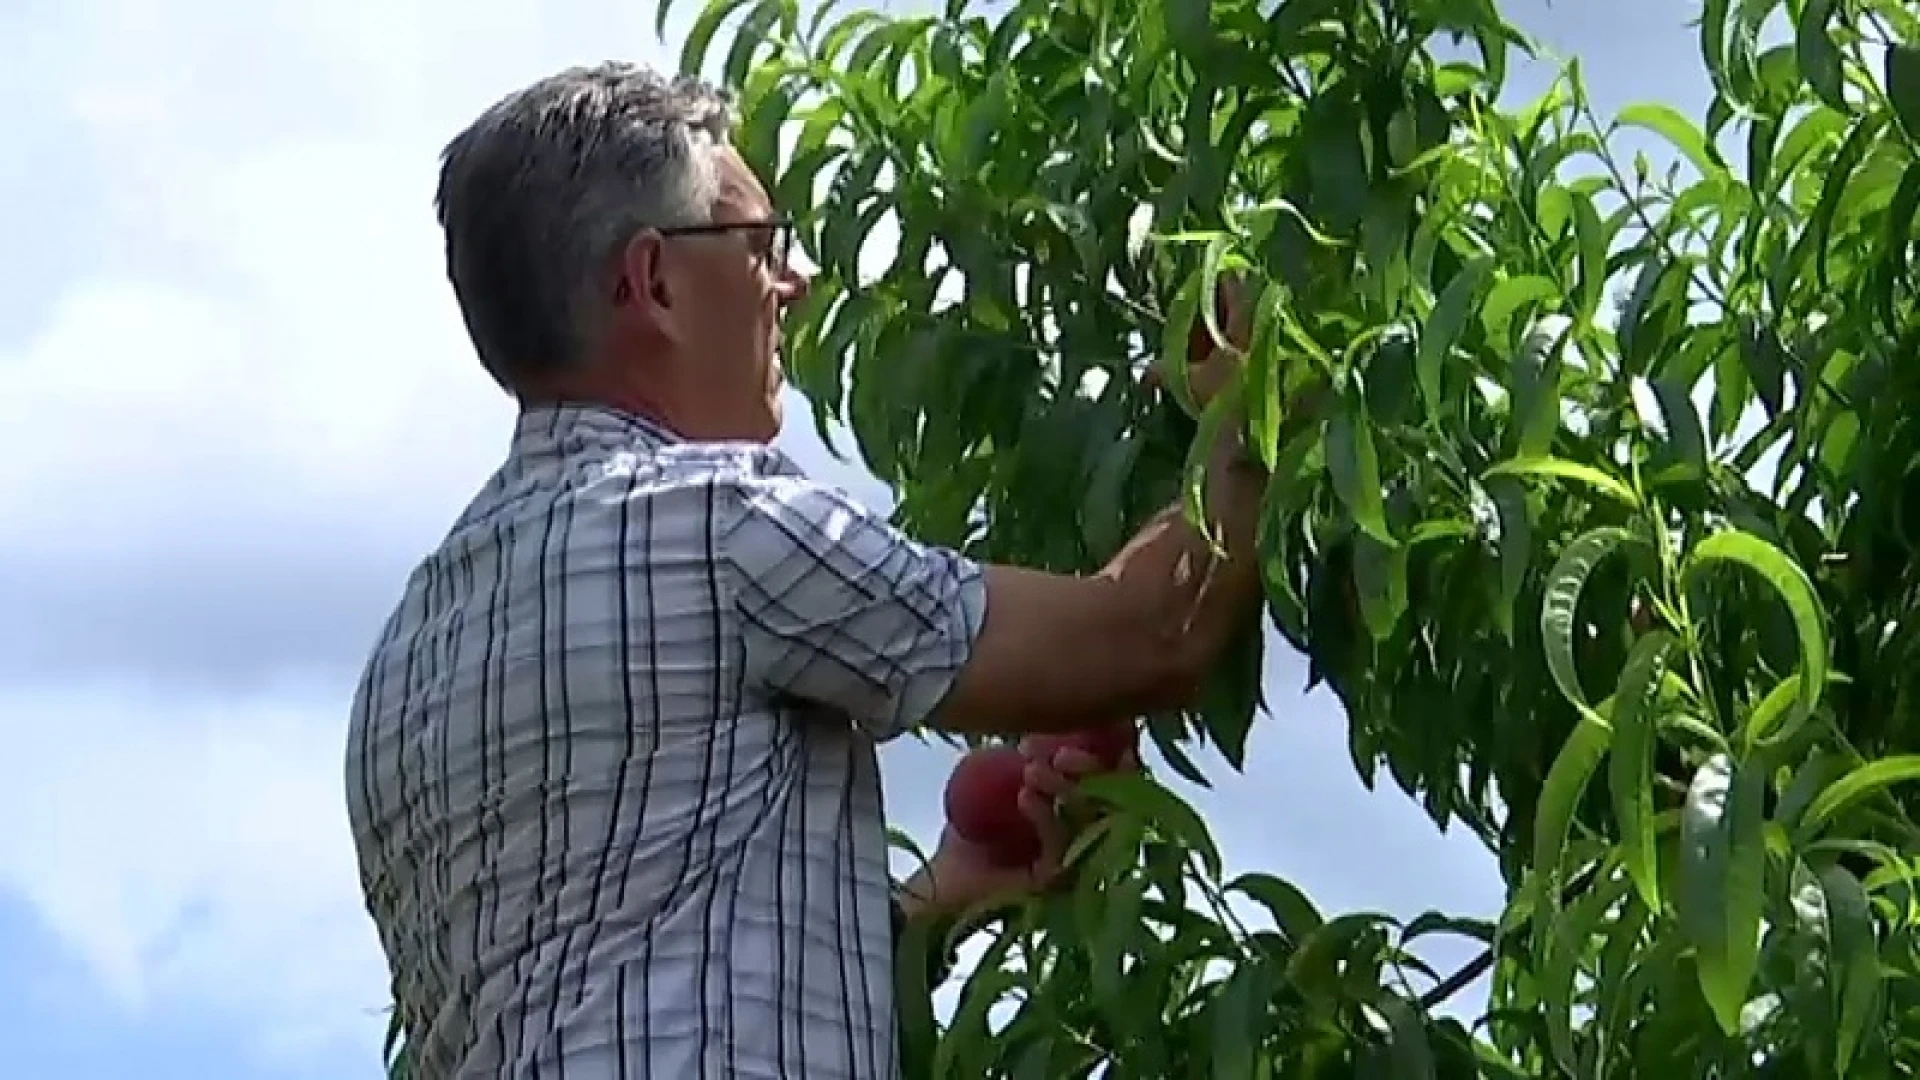 Rampjaar voor Hagelandse perziken: 90 procent minder oogst